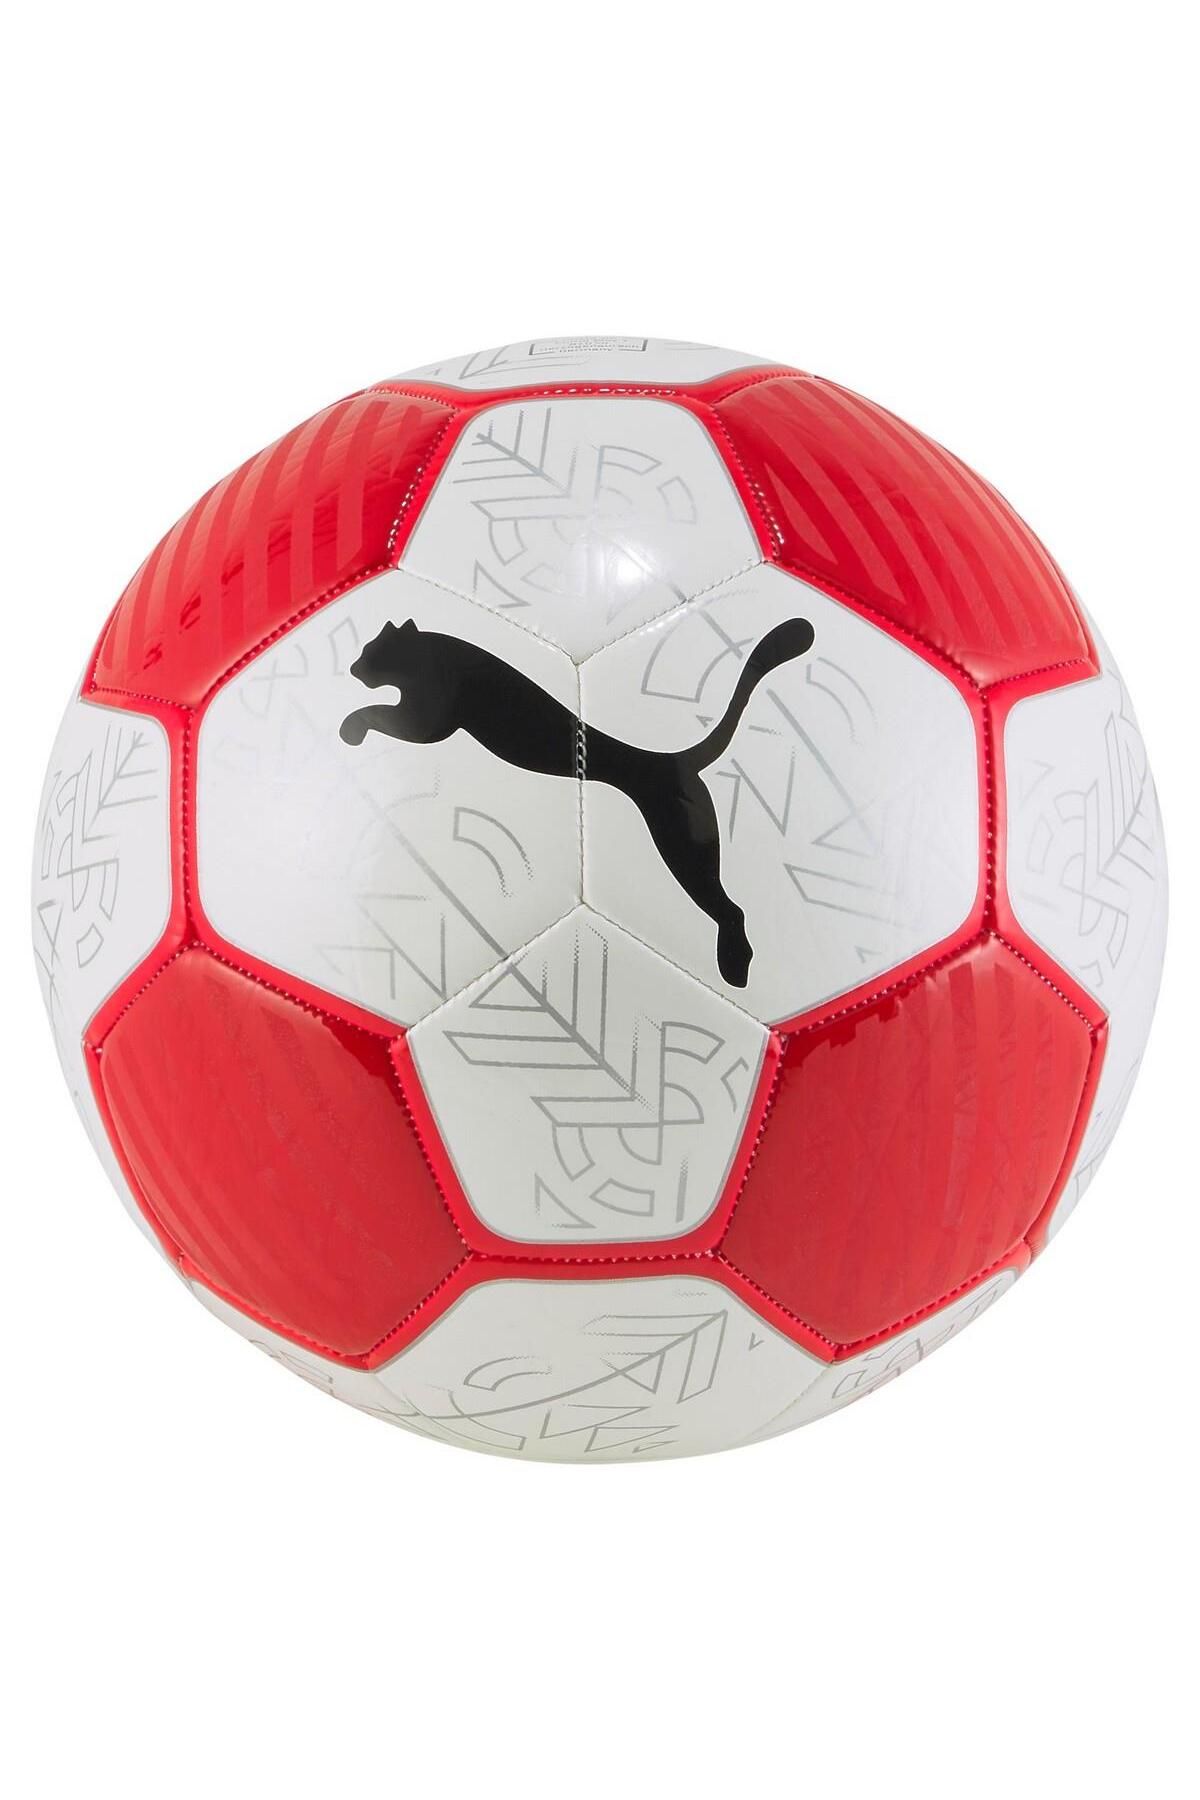 Puma 08399202 Prestige Ball Unisex Futbol Topu